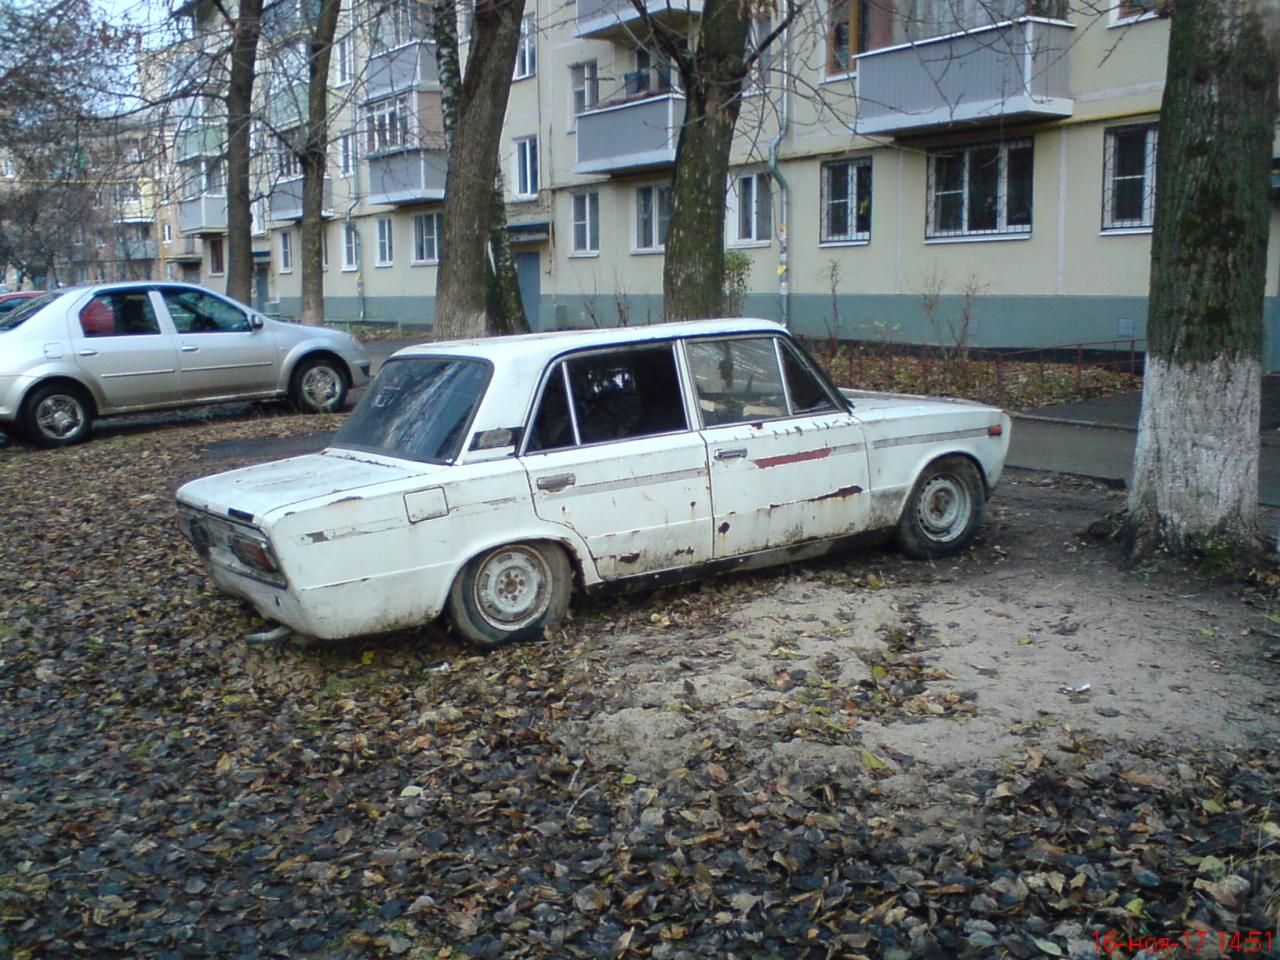 Об уборке разукомплектованного автомобиля по ул. Островского, напротив дома 36